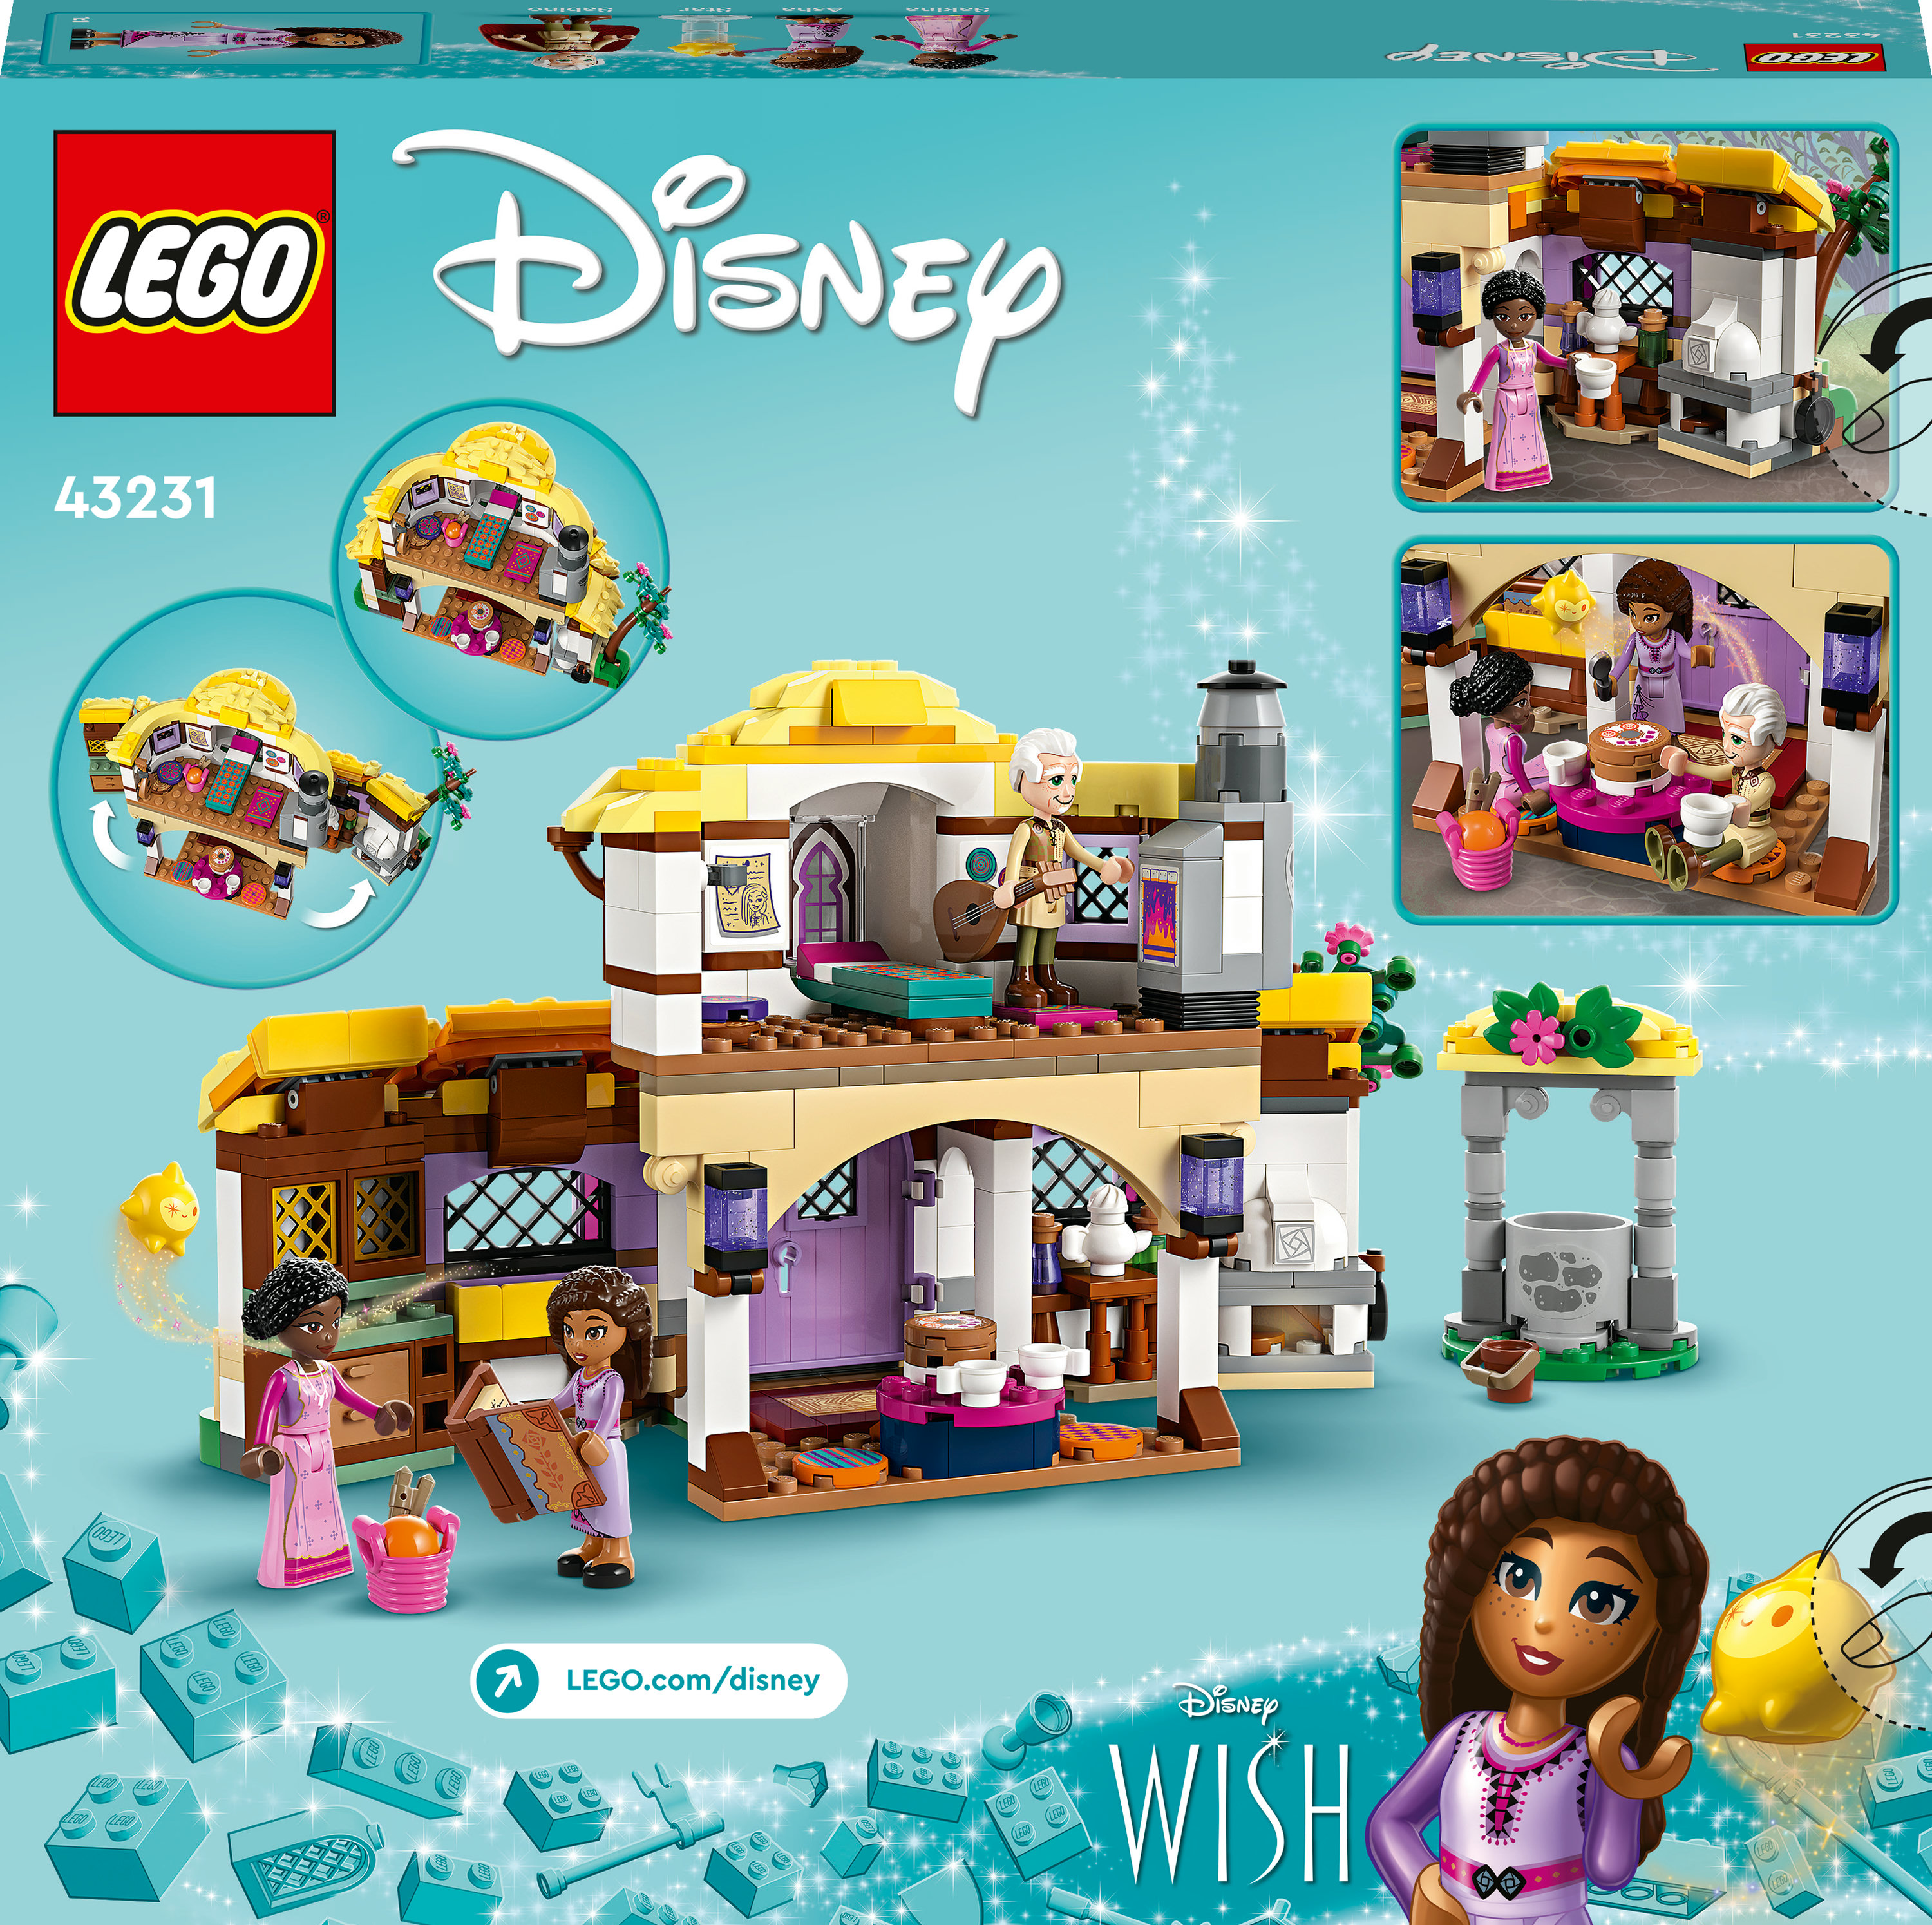 Конструктор LEGO Disney Домик Аши 509 деталей (43231) - фото 9